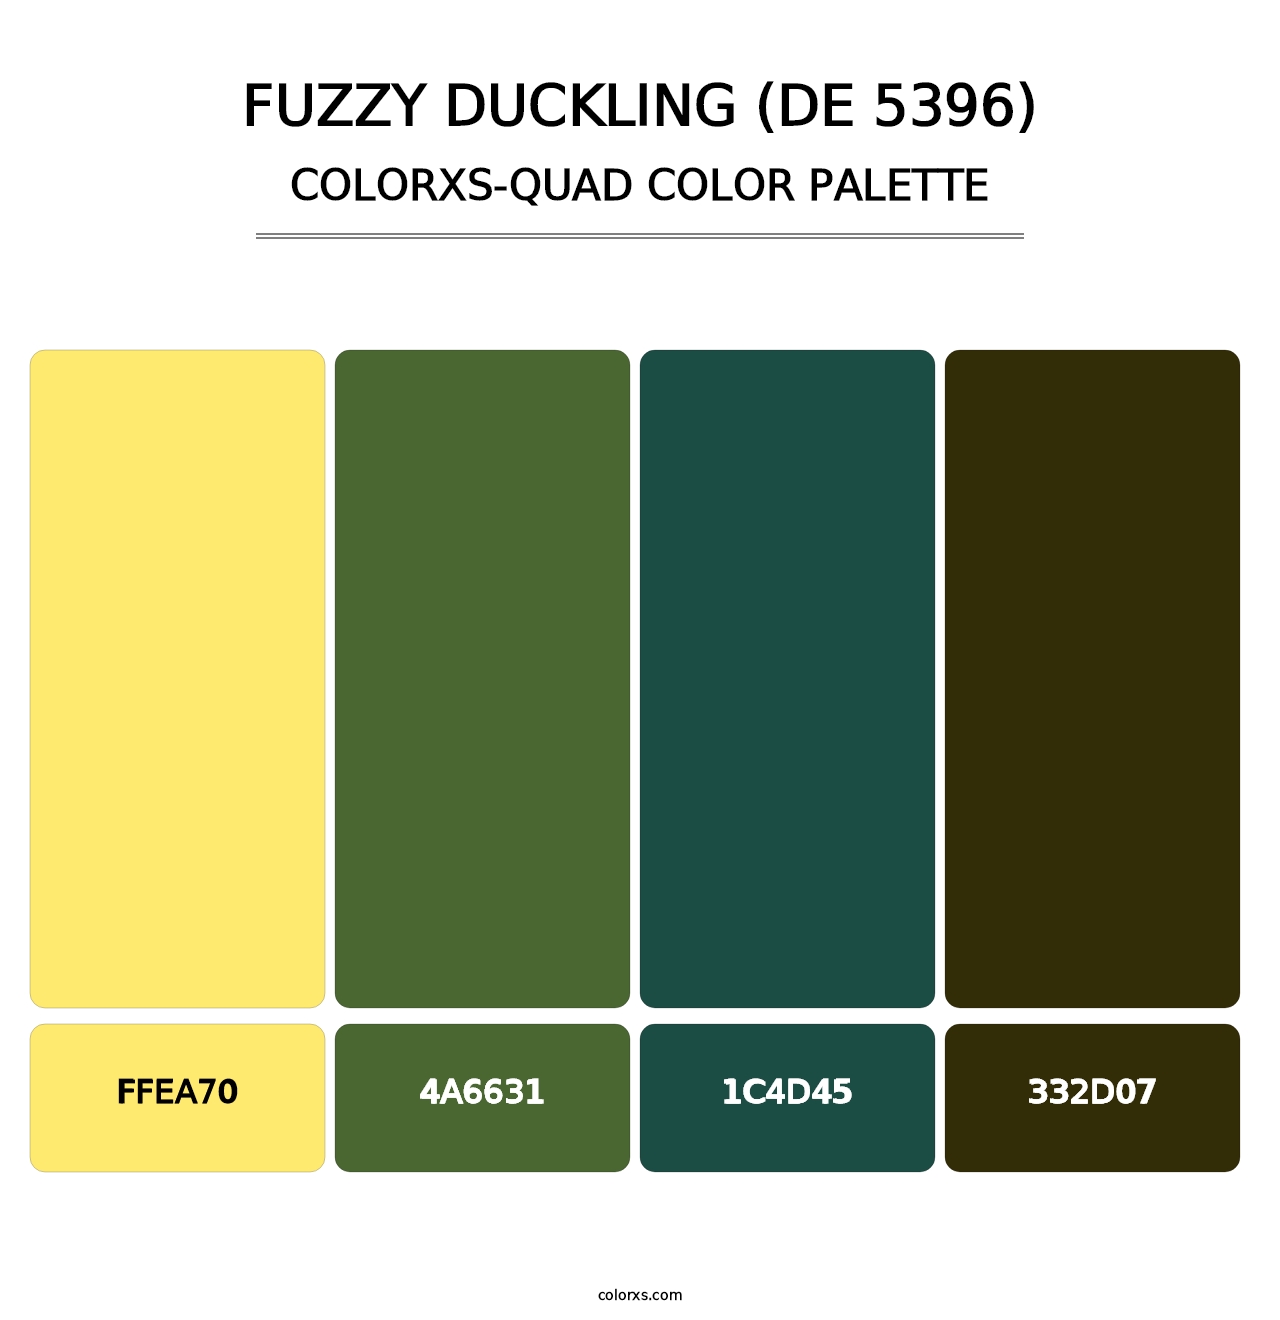 Fuzzy Duckling (DE 5396) - Colorxs Quad Palette